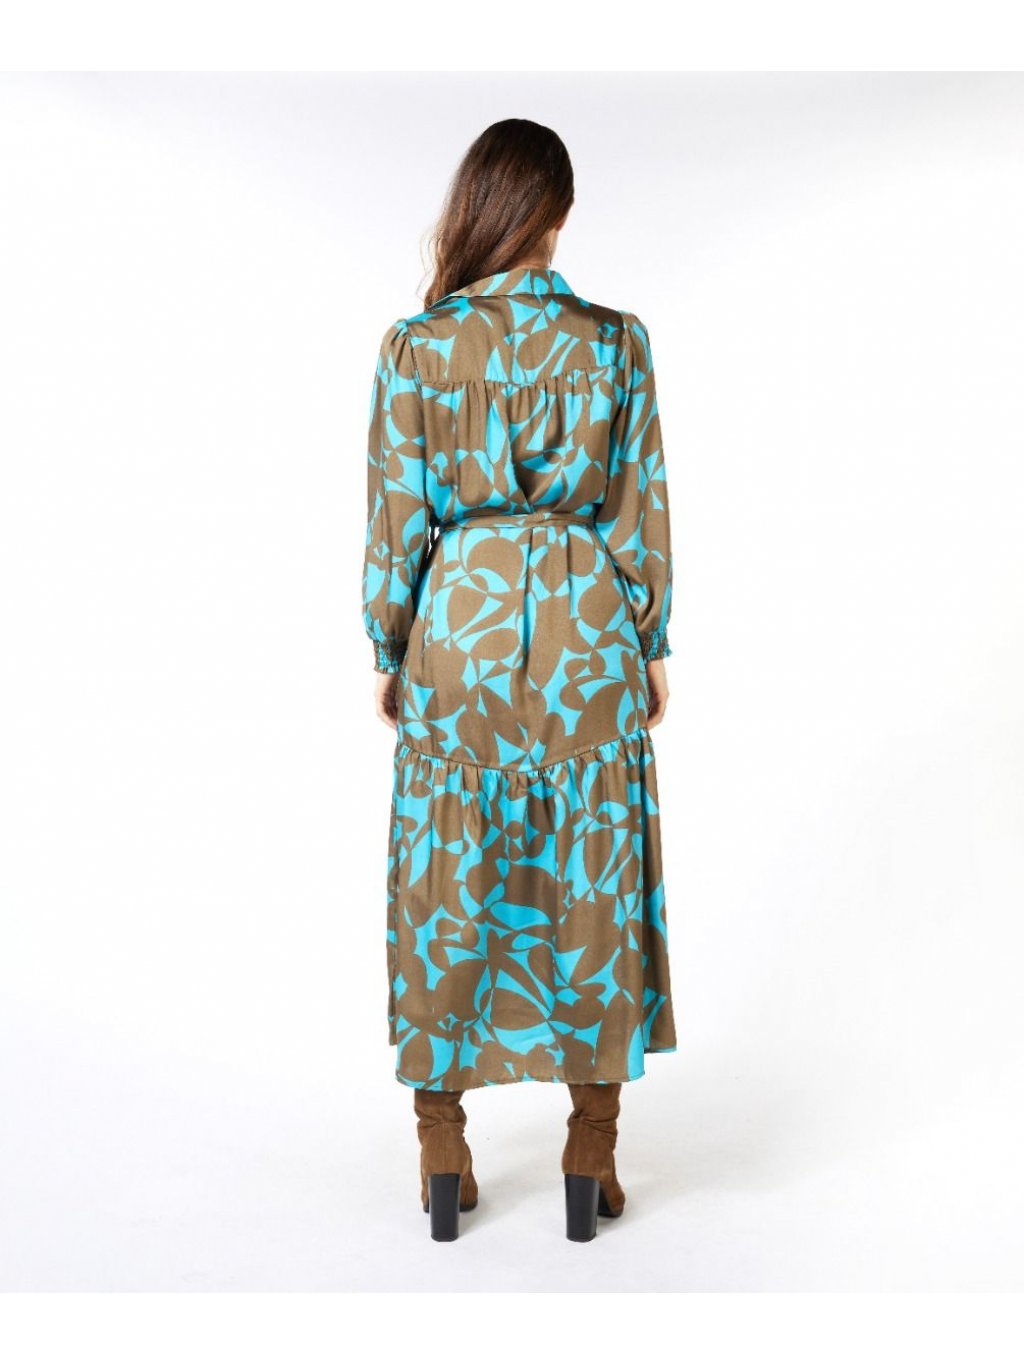 Šaty Esqualo 14517 tyrkysovo hnědé se vzorem dlouhé